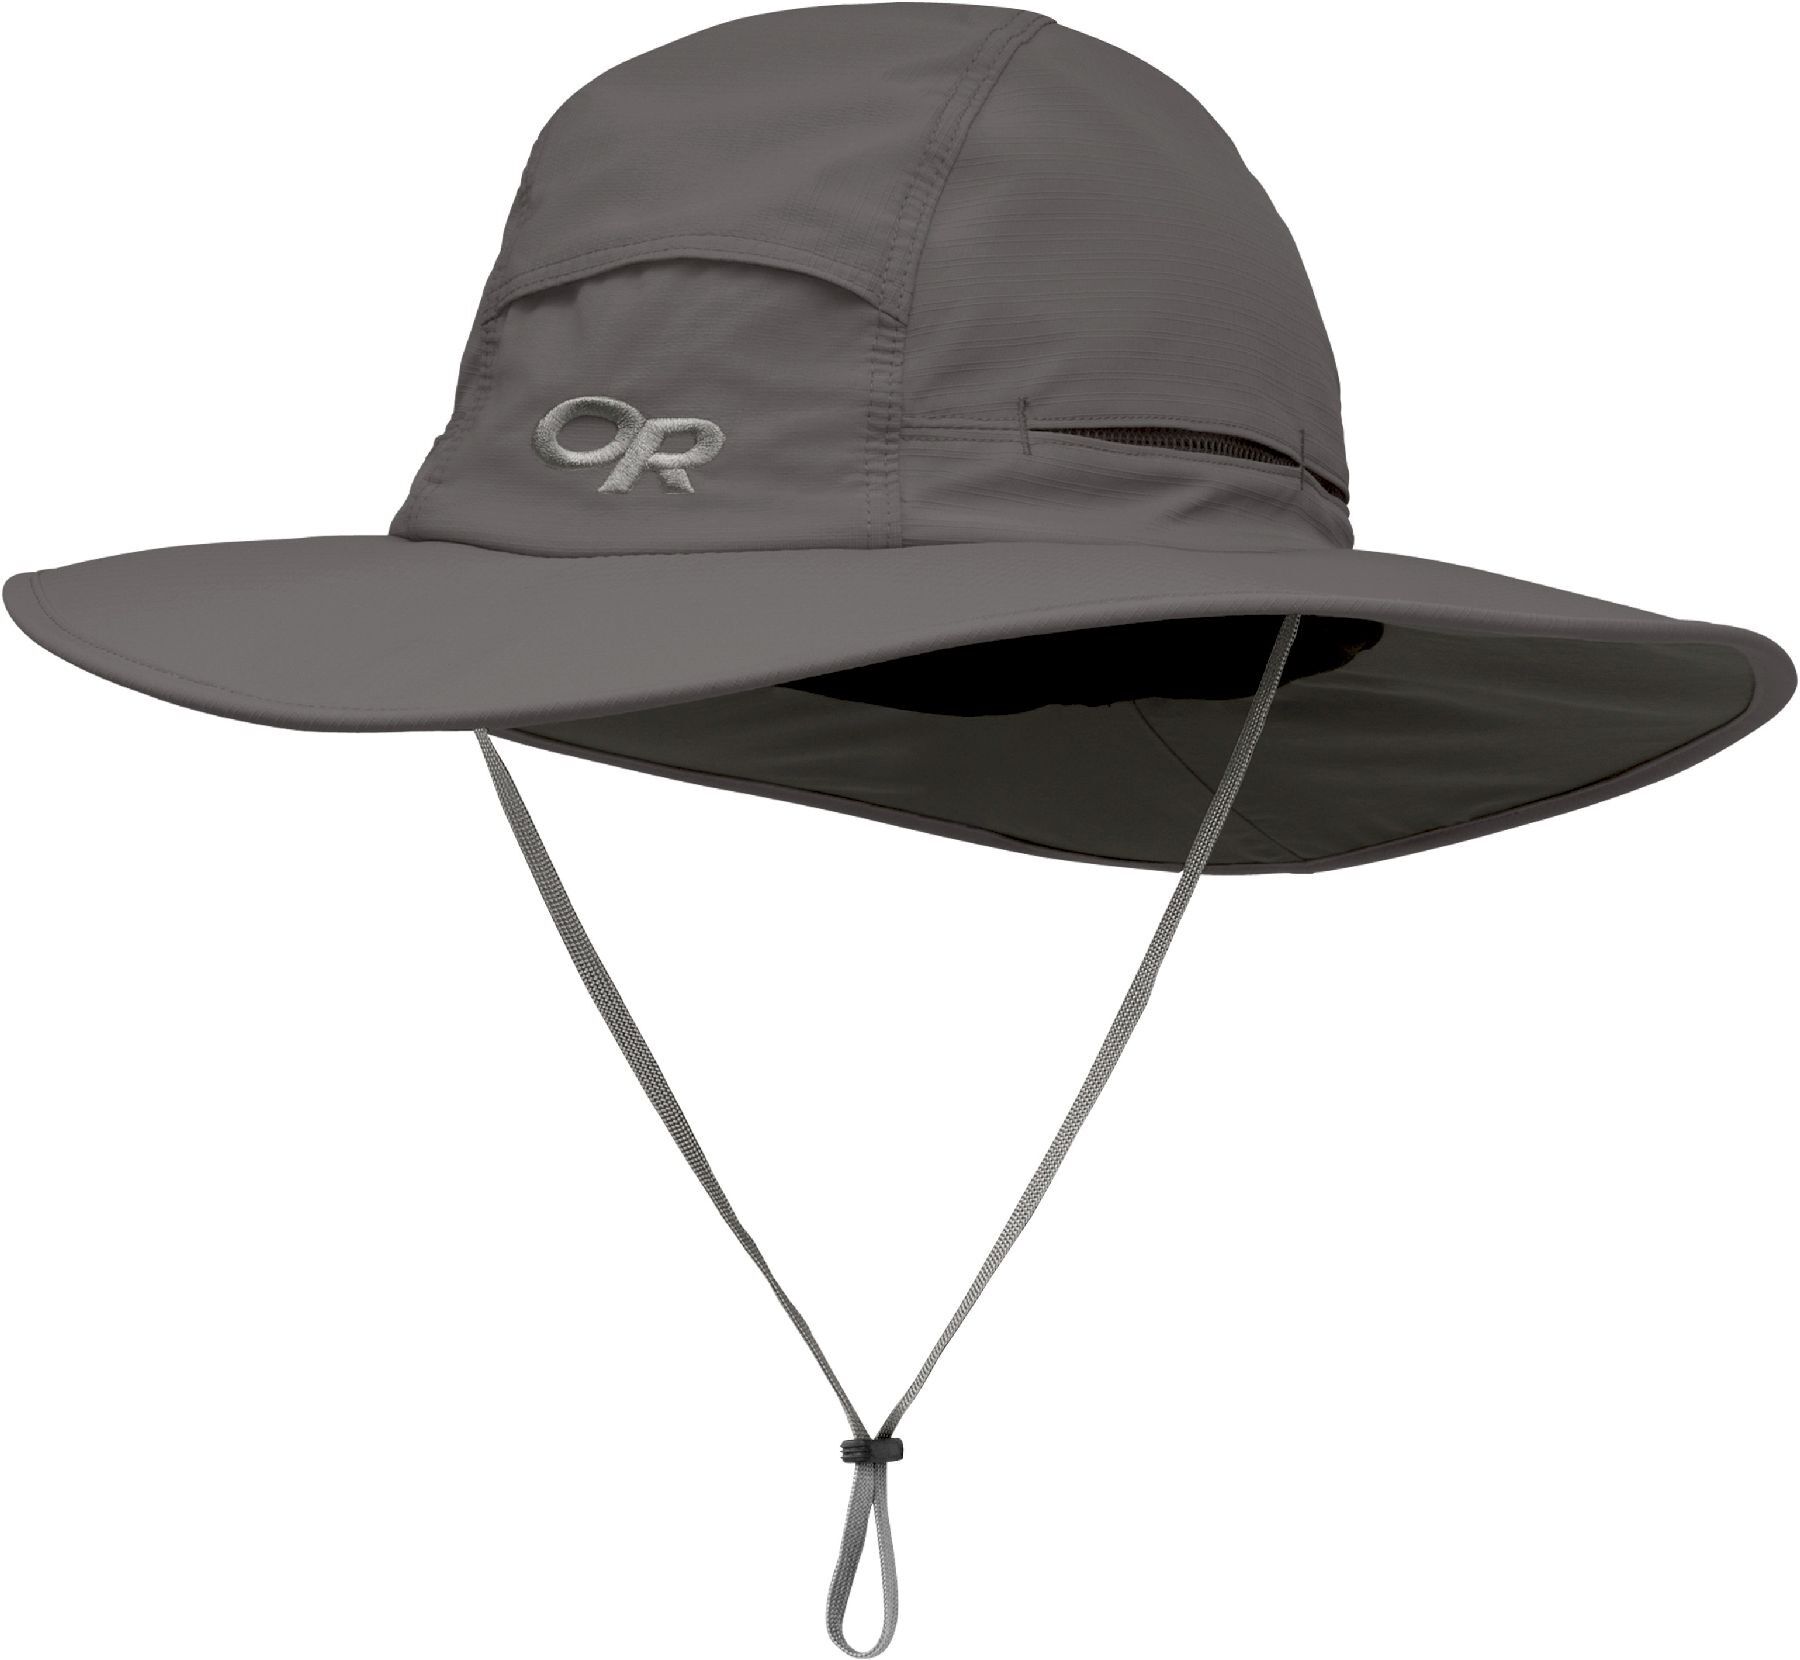 Outdoor Research Sombriolet Sun Hat - Kapelusz | Hardloop